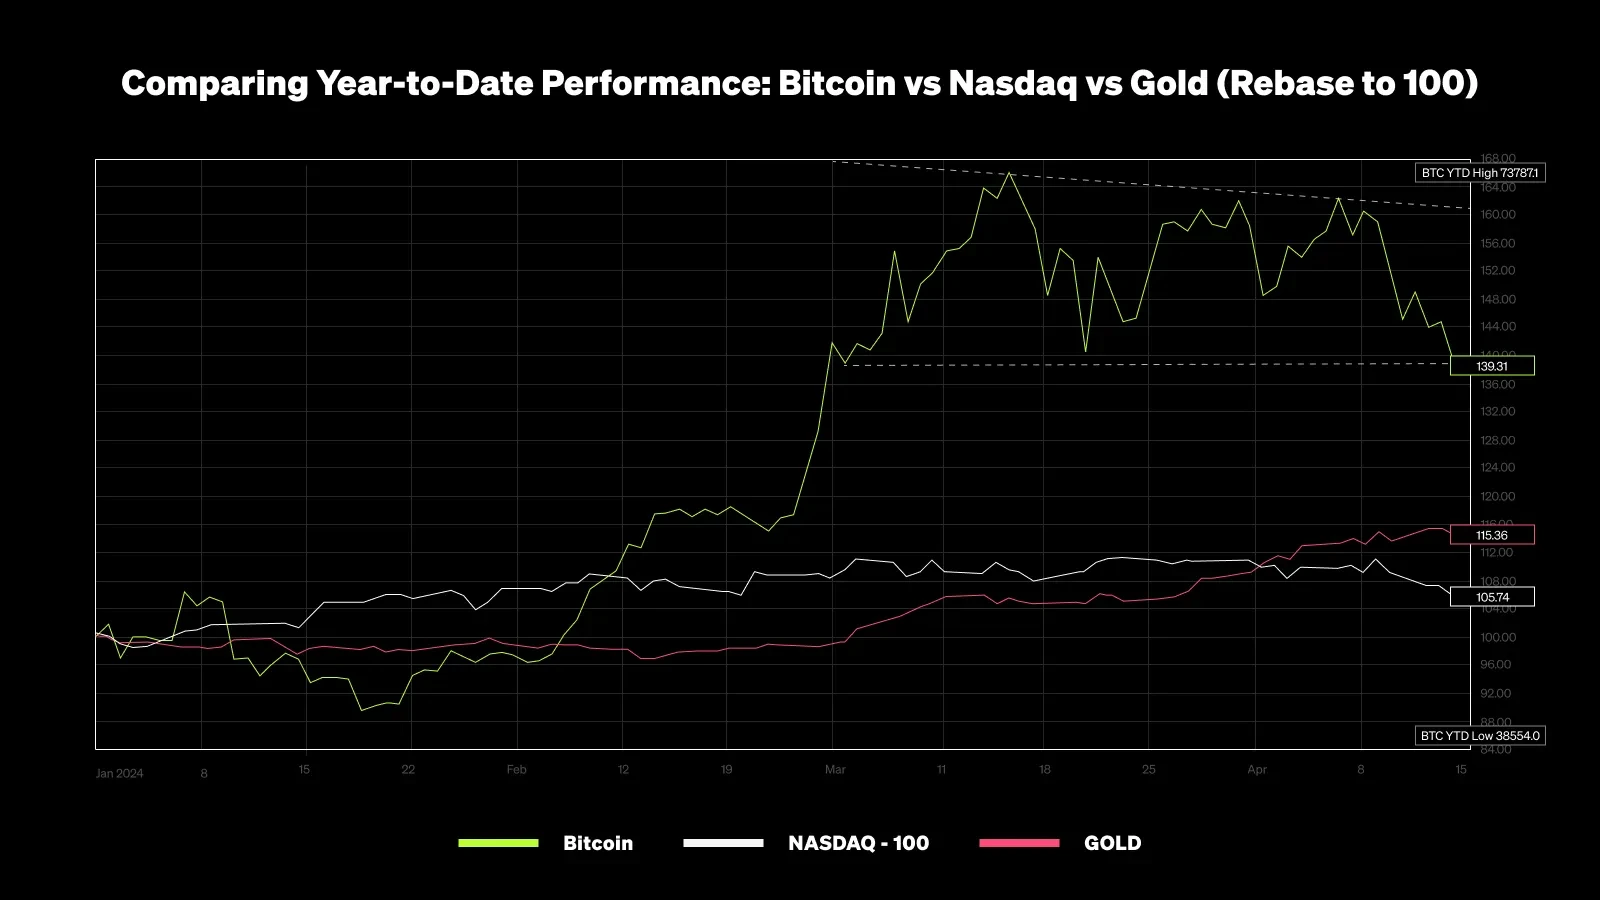 BTC vs Nasdaq vs Gold